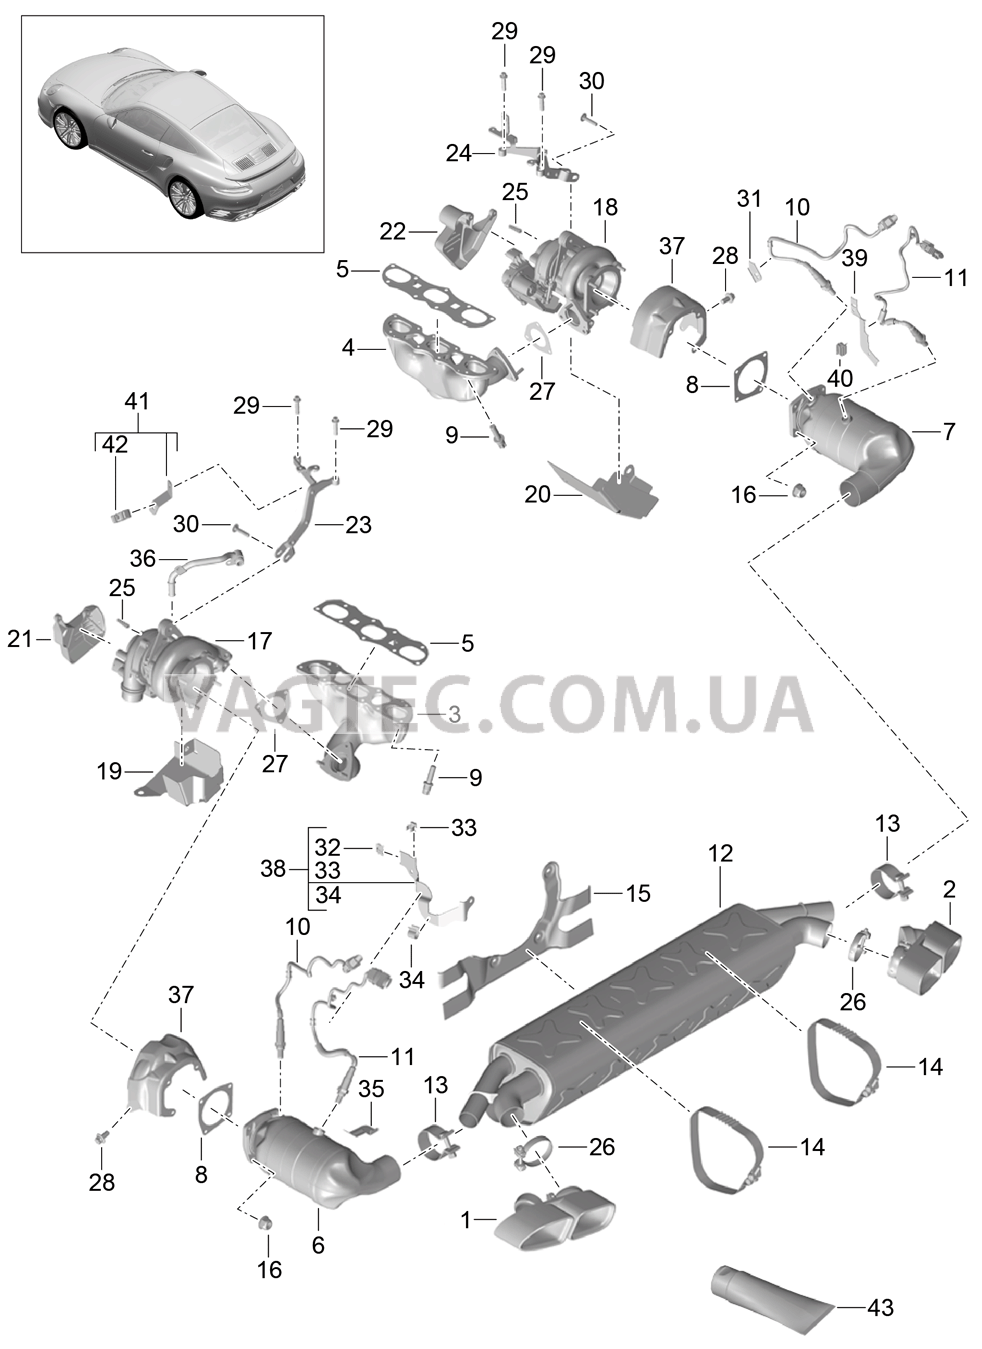 202-000 Выпускная система, Очистка ОГ, Турбонагнетатель ОГ для PORSCHE Porsche991Turbo 2014-2017USA